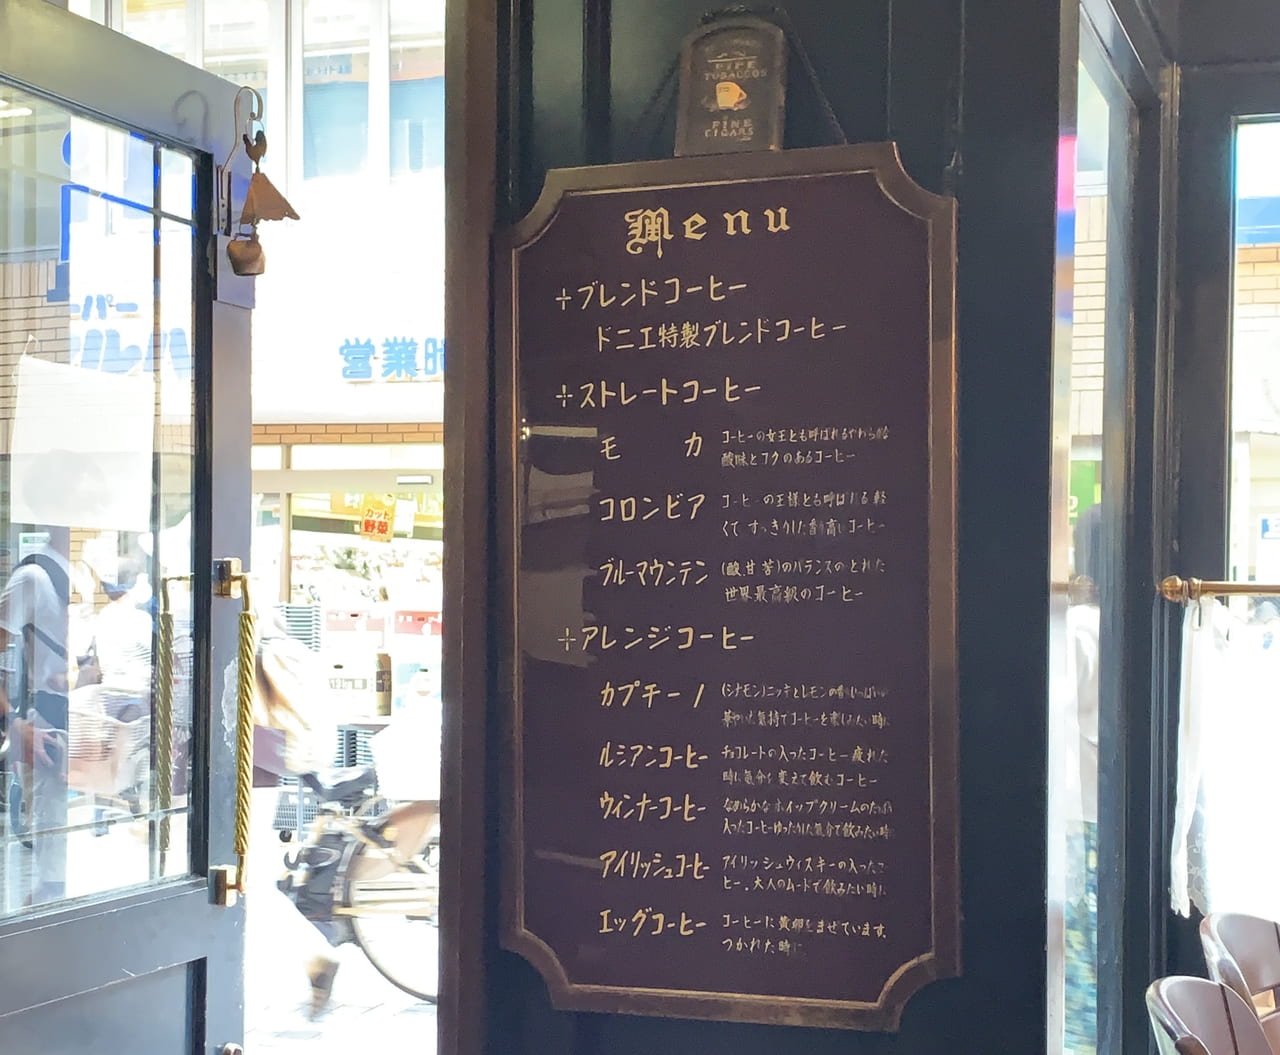 神戸市灘区 はじまりは戦後 歌声喫茶 ですって 歴史あり過ぎの水道筋商店街 喫茶ドニエ で名物オムライスをいただきました 号外net 神戸市 灘区 東灘区